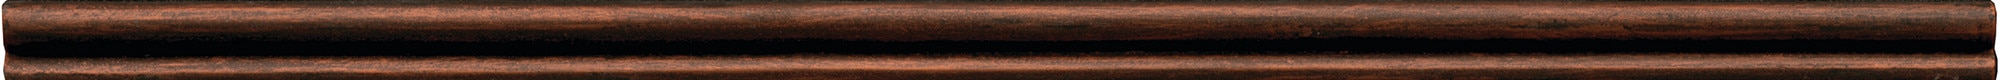 Guilded Copper, Liner, 1/2X12, Satin